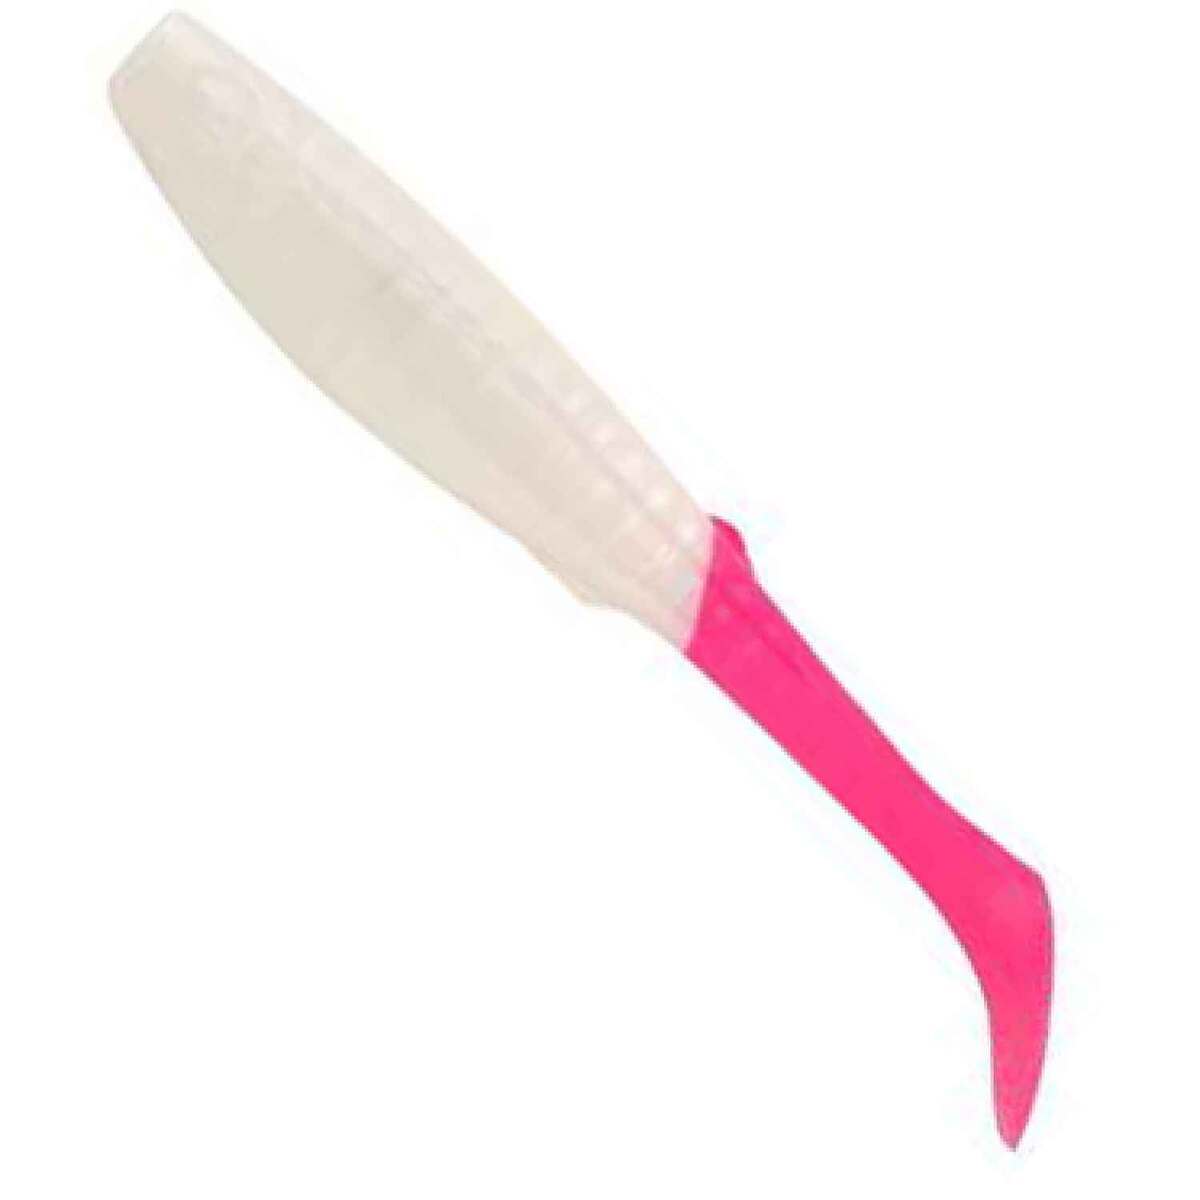 Berkley Gulp! Paddleshad - Pearl White/Pink - 4in